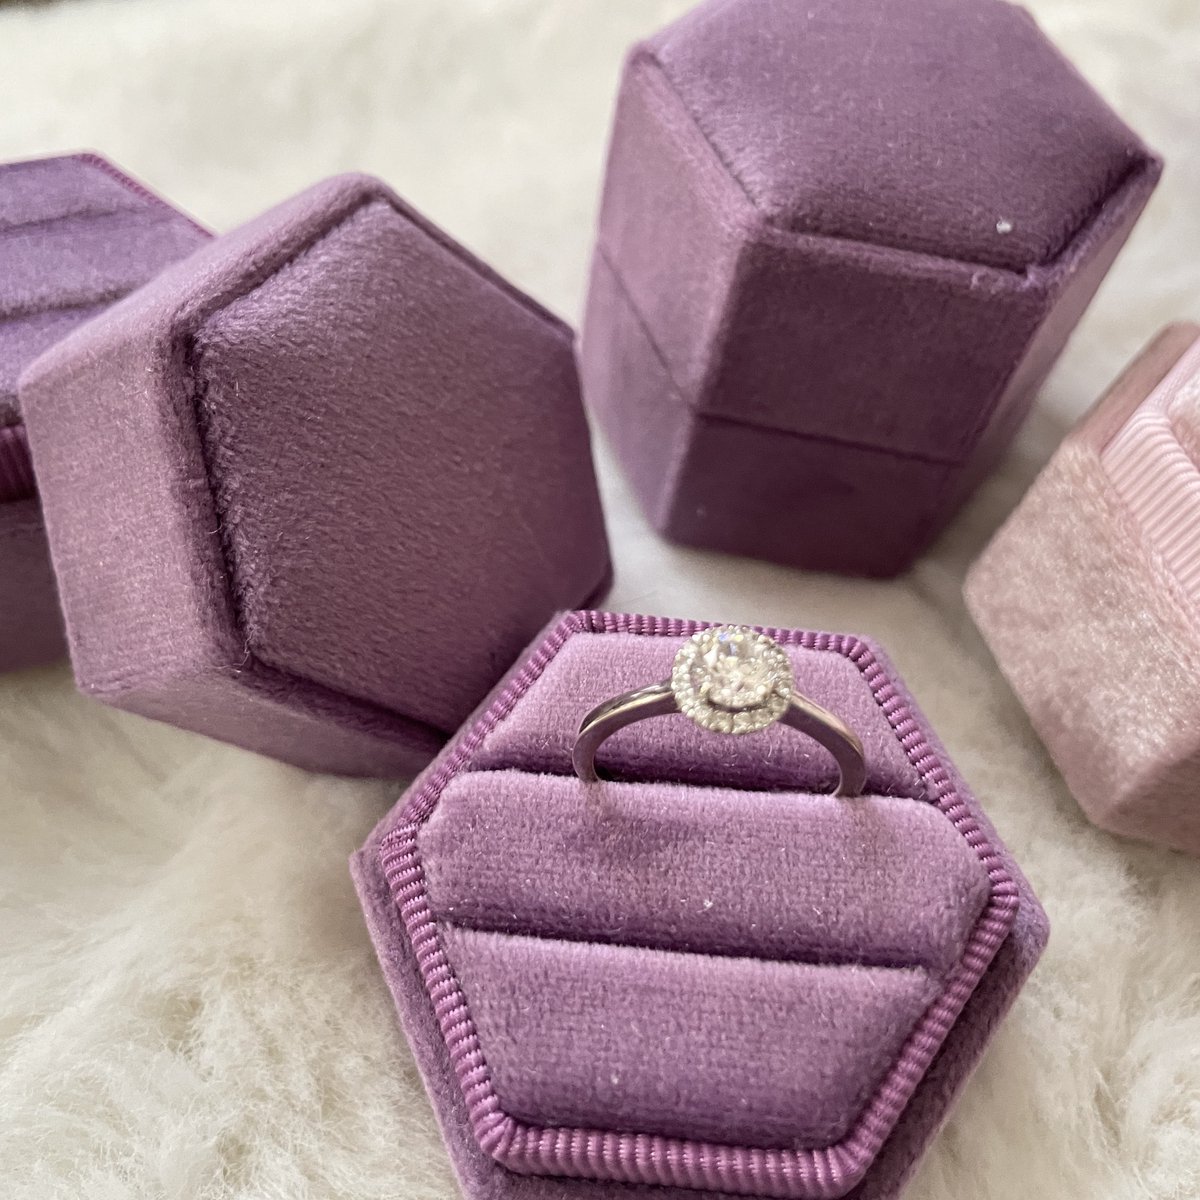 Vintage geïnspireerde Hexagon fluwelen trouwring box-lila-voor 2 rings